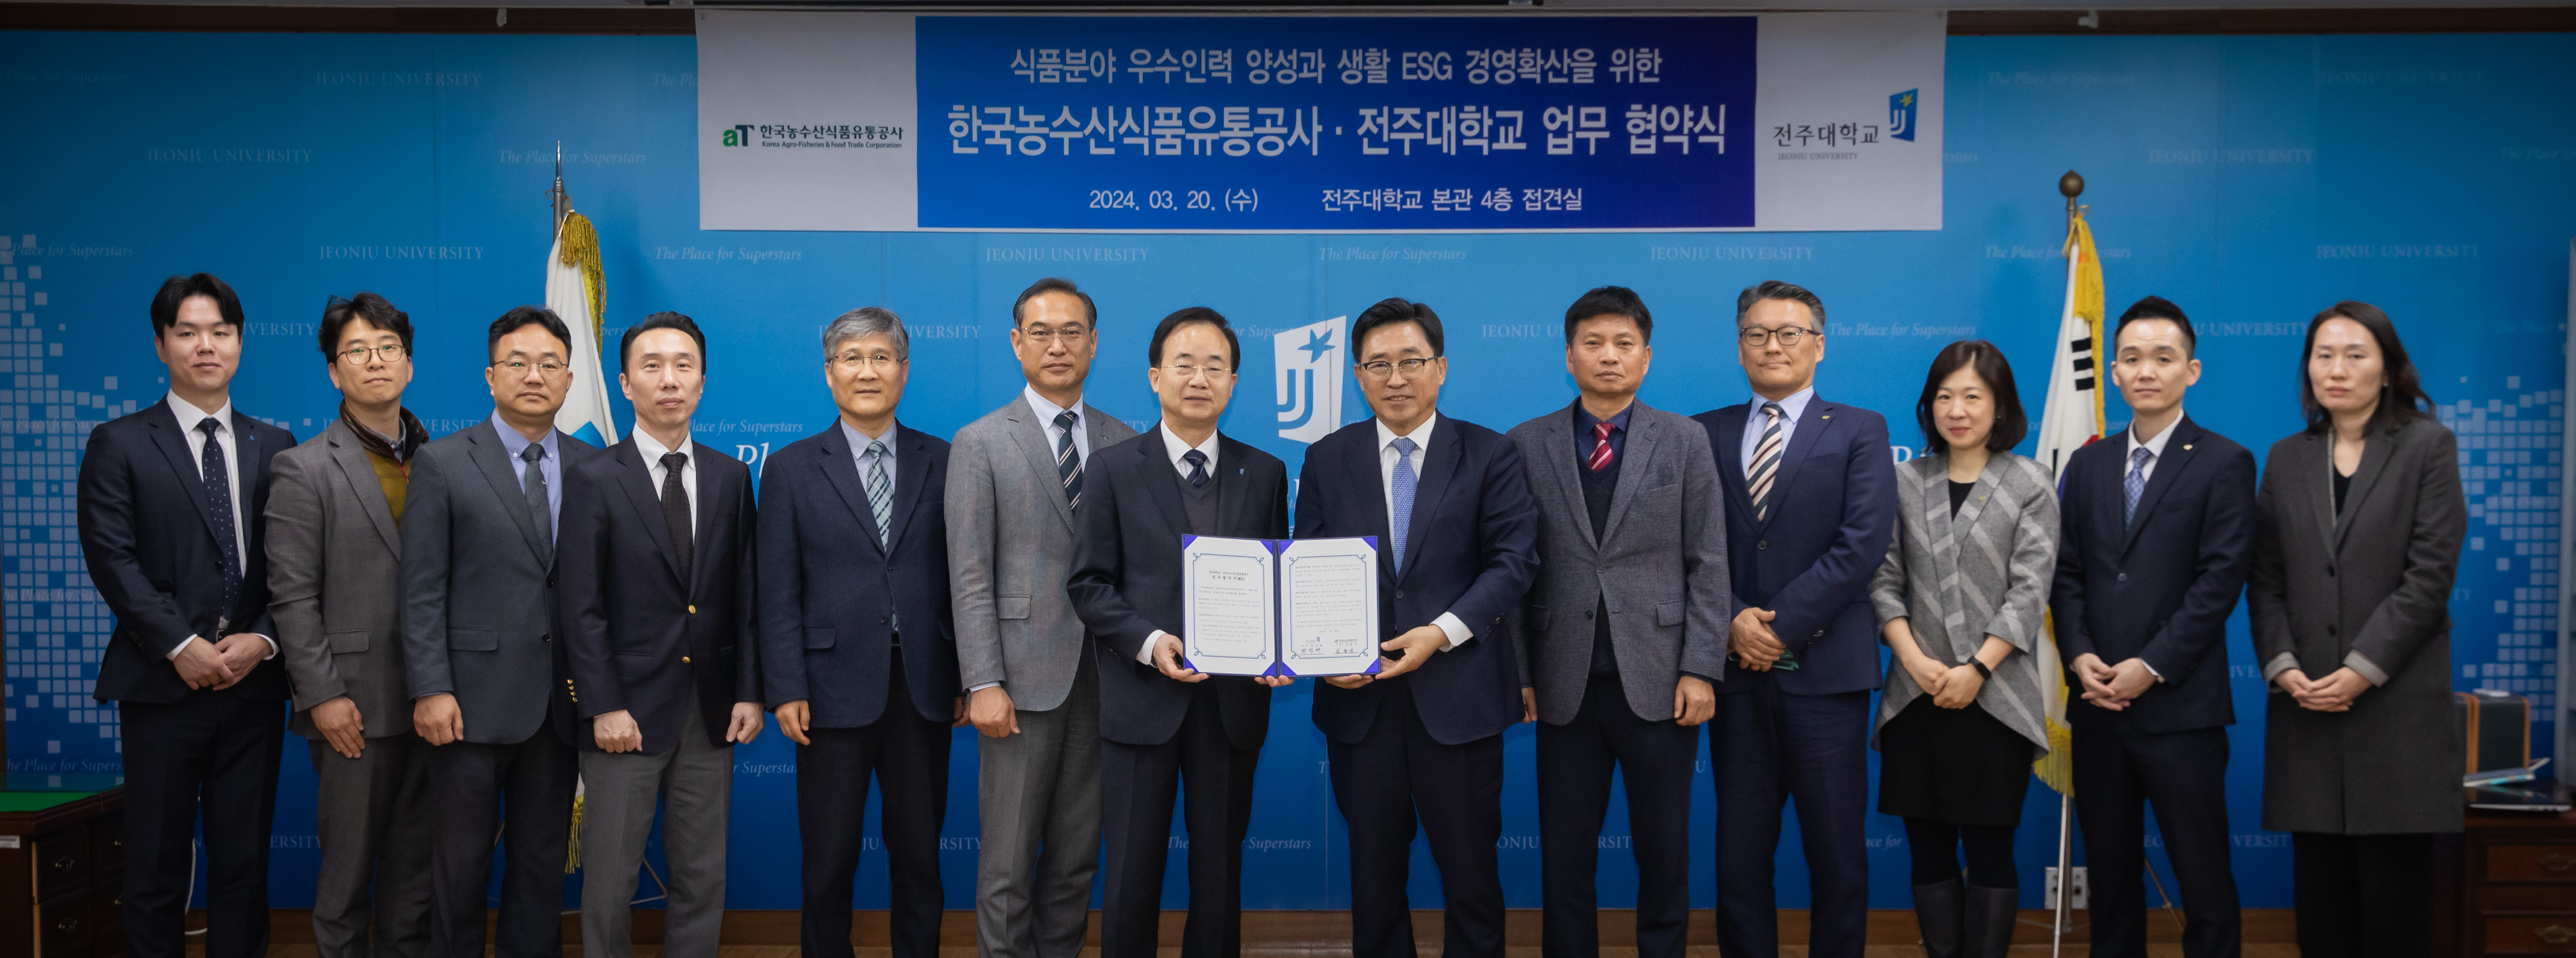 대학원, 한국농수산식품유통공사와 업무협약 체결